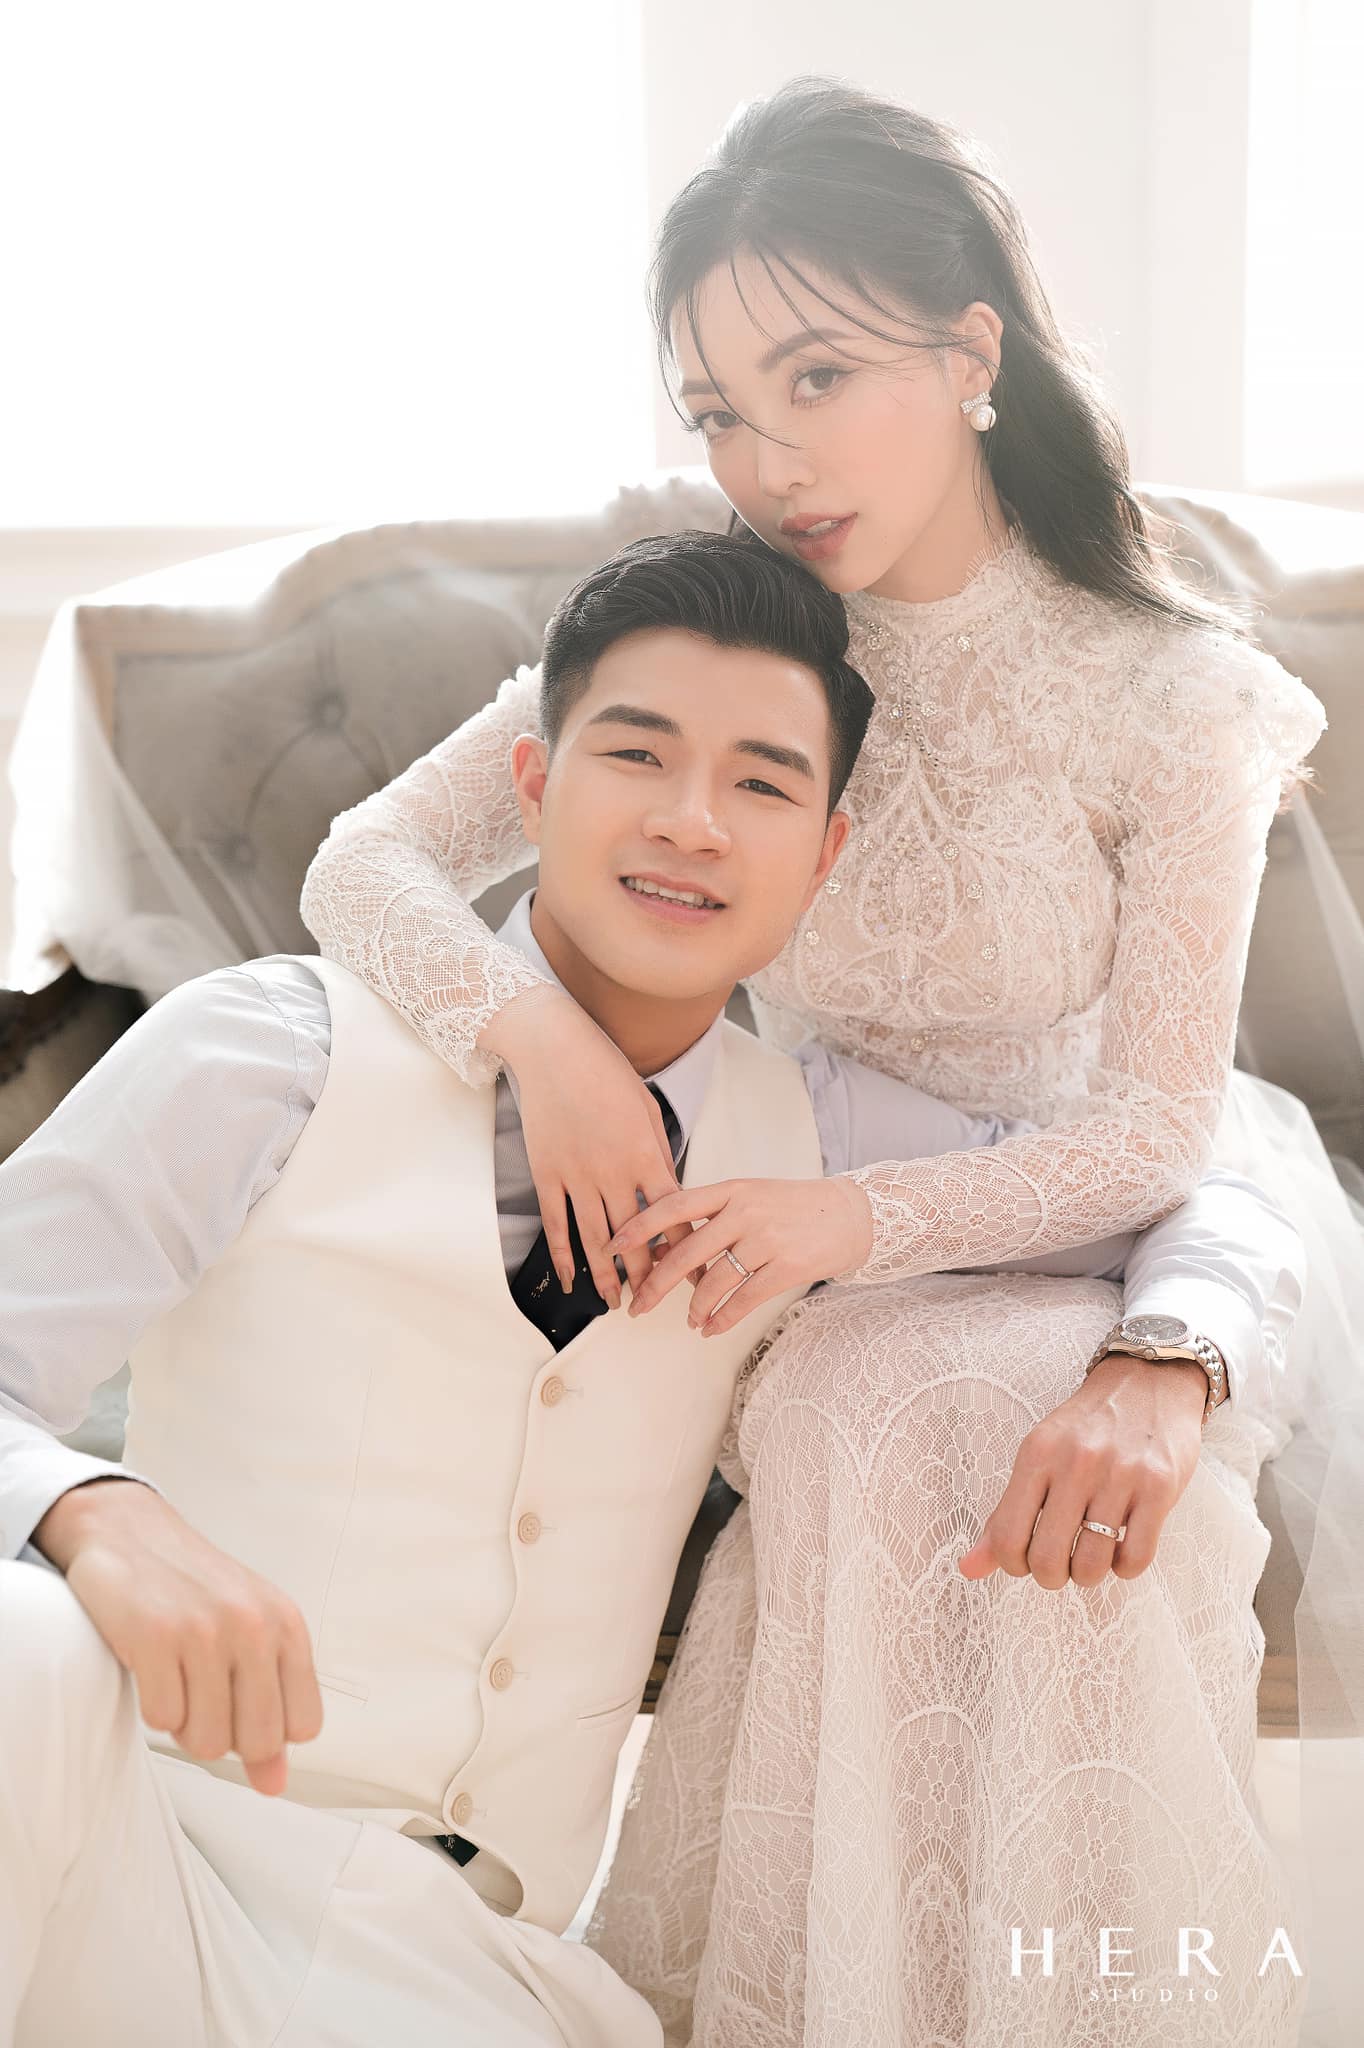 Cầu thủ Hà Đức Chinh tung ảnh cưới đẹp như mơ bên vợ hotgirl, nhan sắc cô dâu khiến dân tình phải trầm trồ